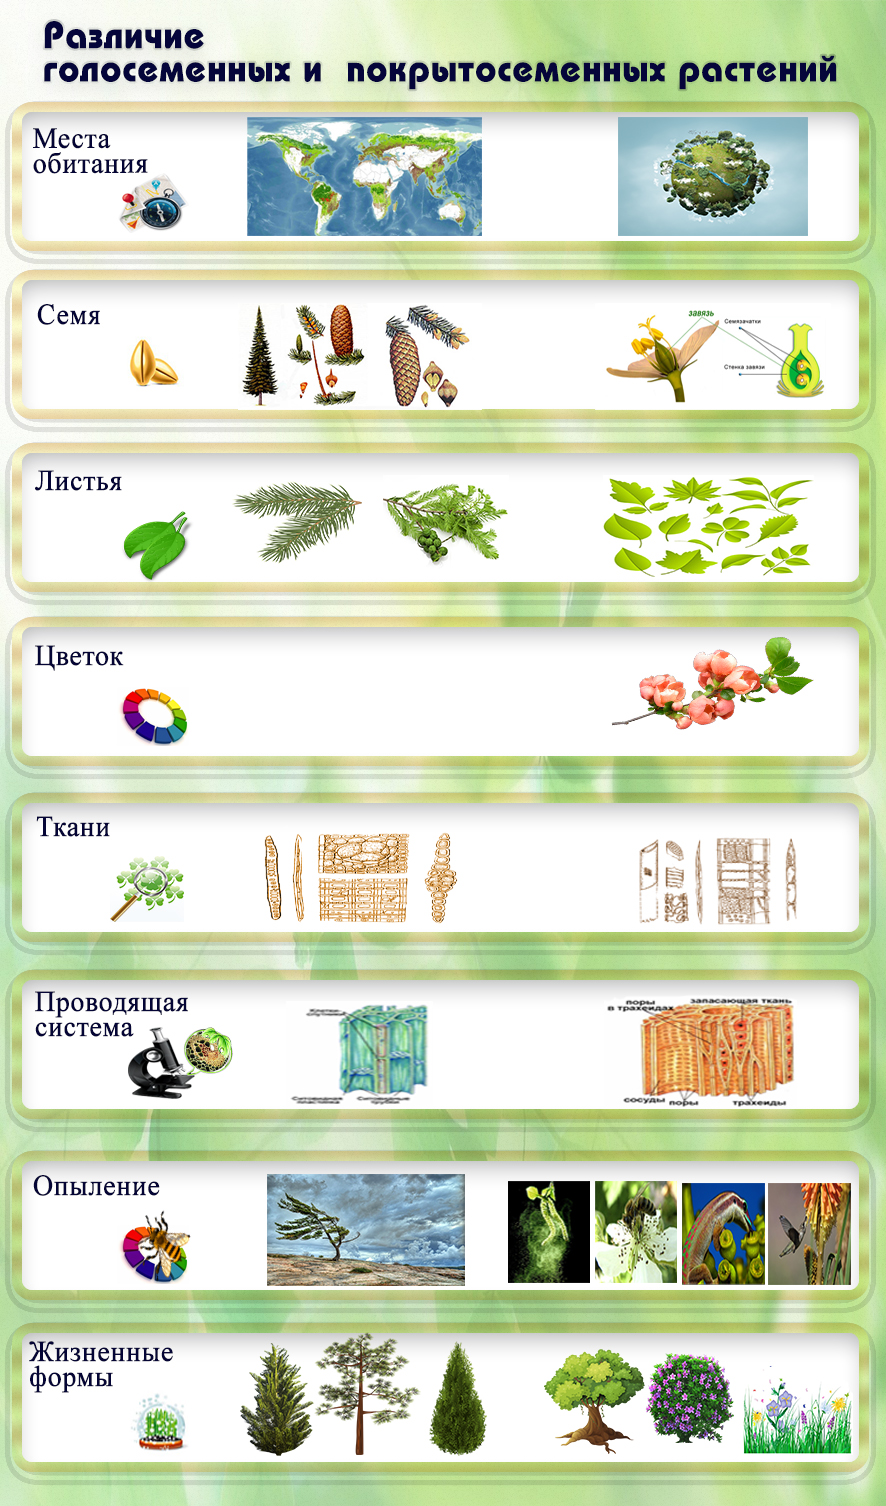 Различие голосеменных и покрытосеменных растений